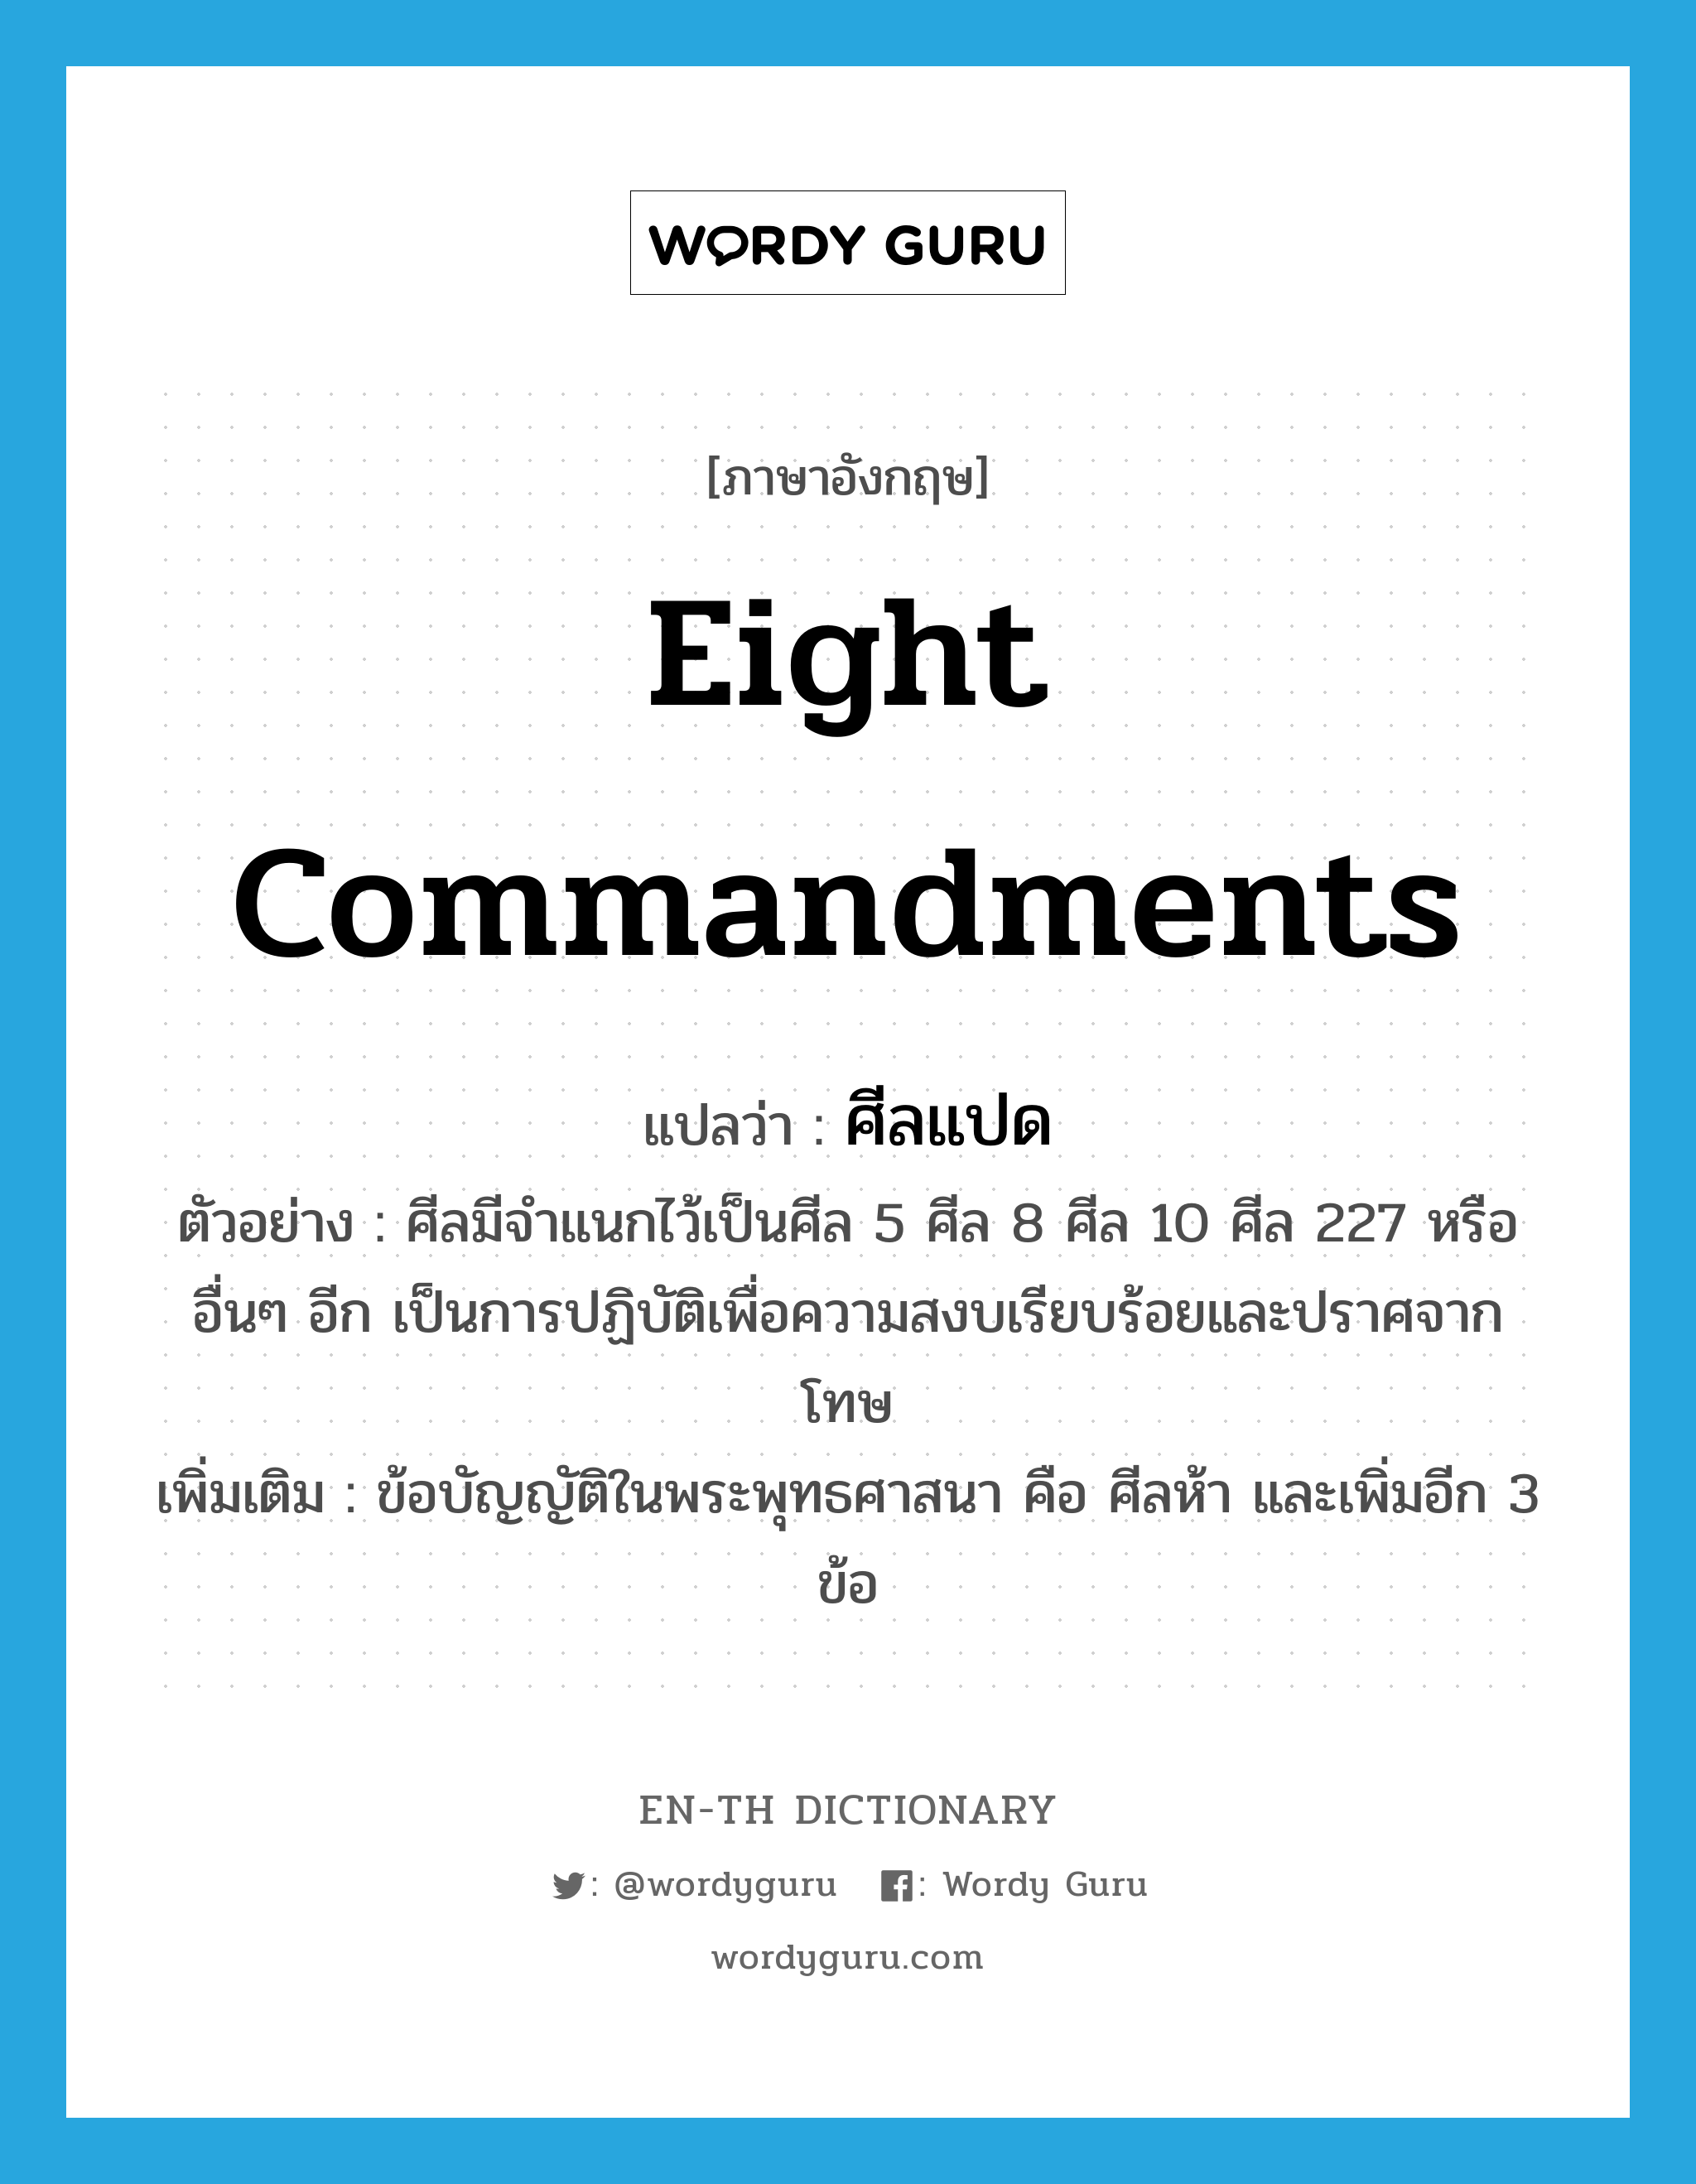 eight commandments แปลว่า?, คำศัพท์ภาษาอังกฤษ eight commandments แปลว่า ศีลแปด ประเภท N ตัวอย่าง ศีลมีจำแนกไว้เป็นศีล 5 ศีล 8 ศีล 10 ศีล 227 หรืออื่นๆ อีก เป็นการปฏิบัติเพื่อความสงบเรียบร้อยและปราศจากโทษ เพิ่มเติม ข้อบัญญัติในพระพุทธศาสนา คือ ศีลห้า และเพิ่มอีก 3 ข้อ หมวด N